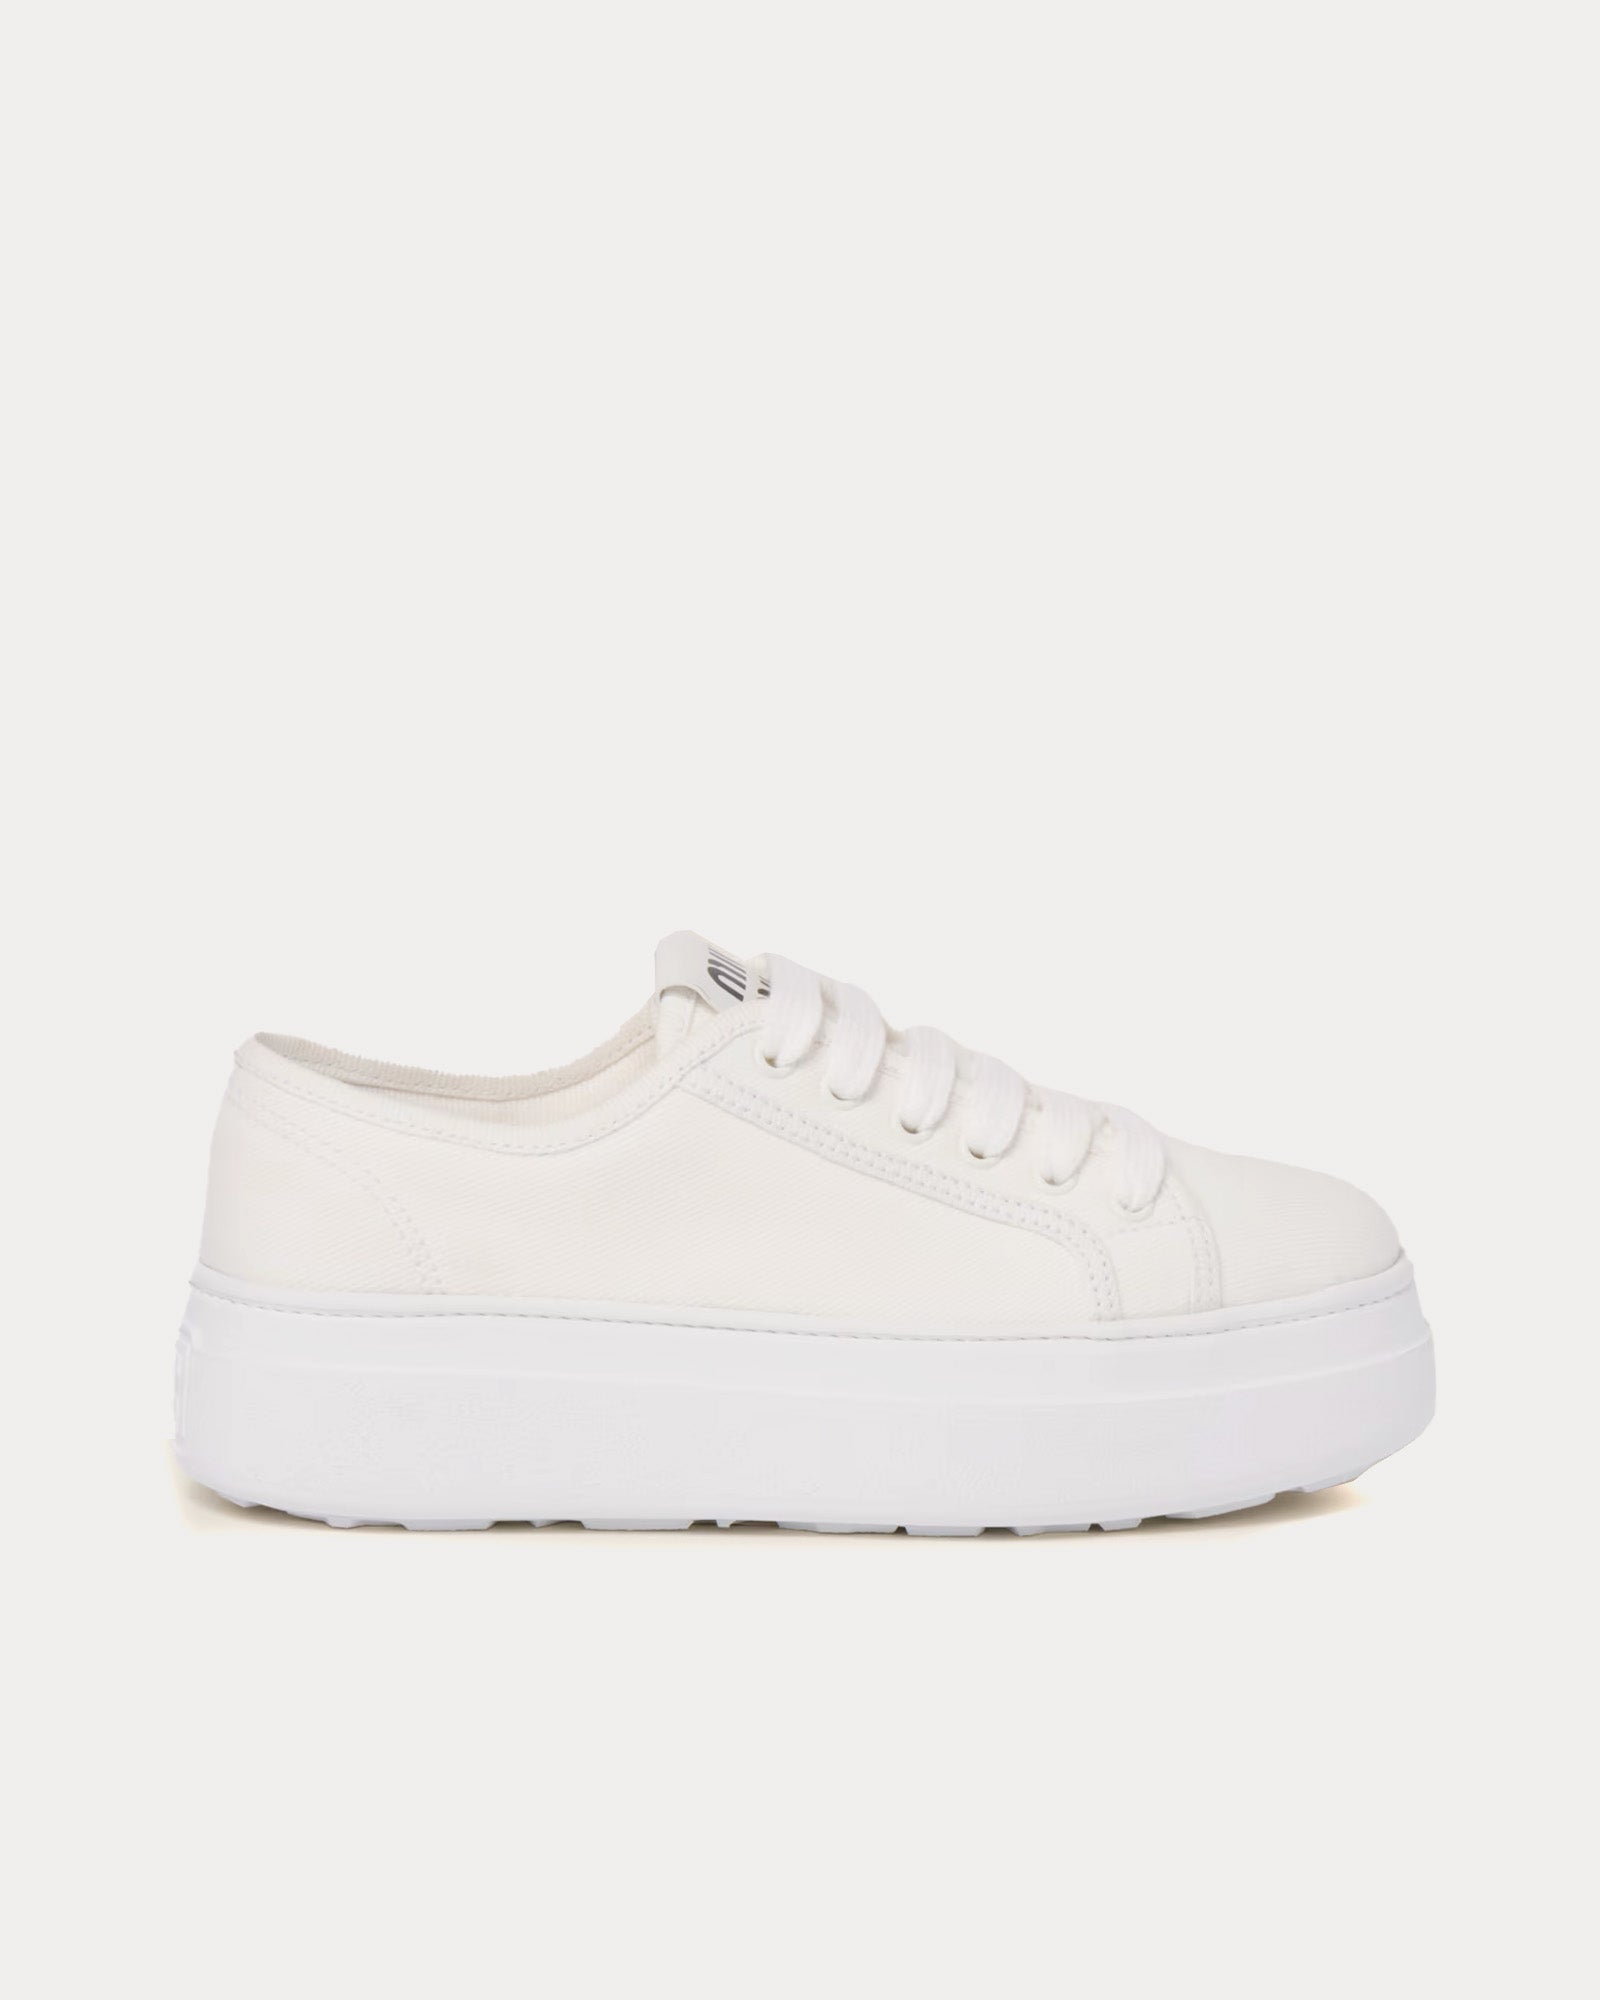 Miu Miu - Denim White Low Top Sneakers